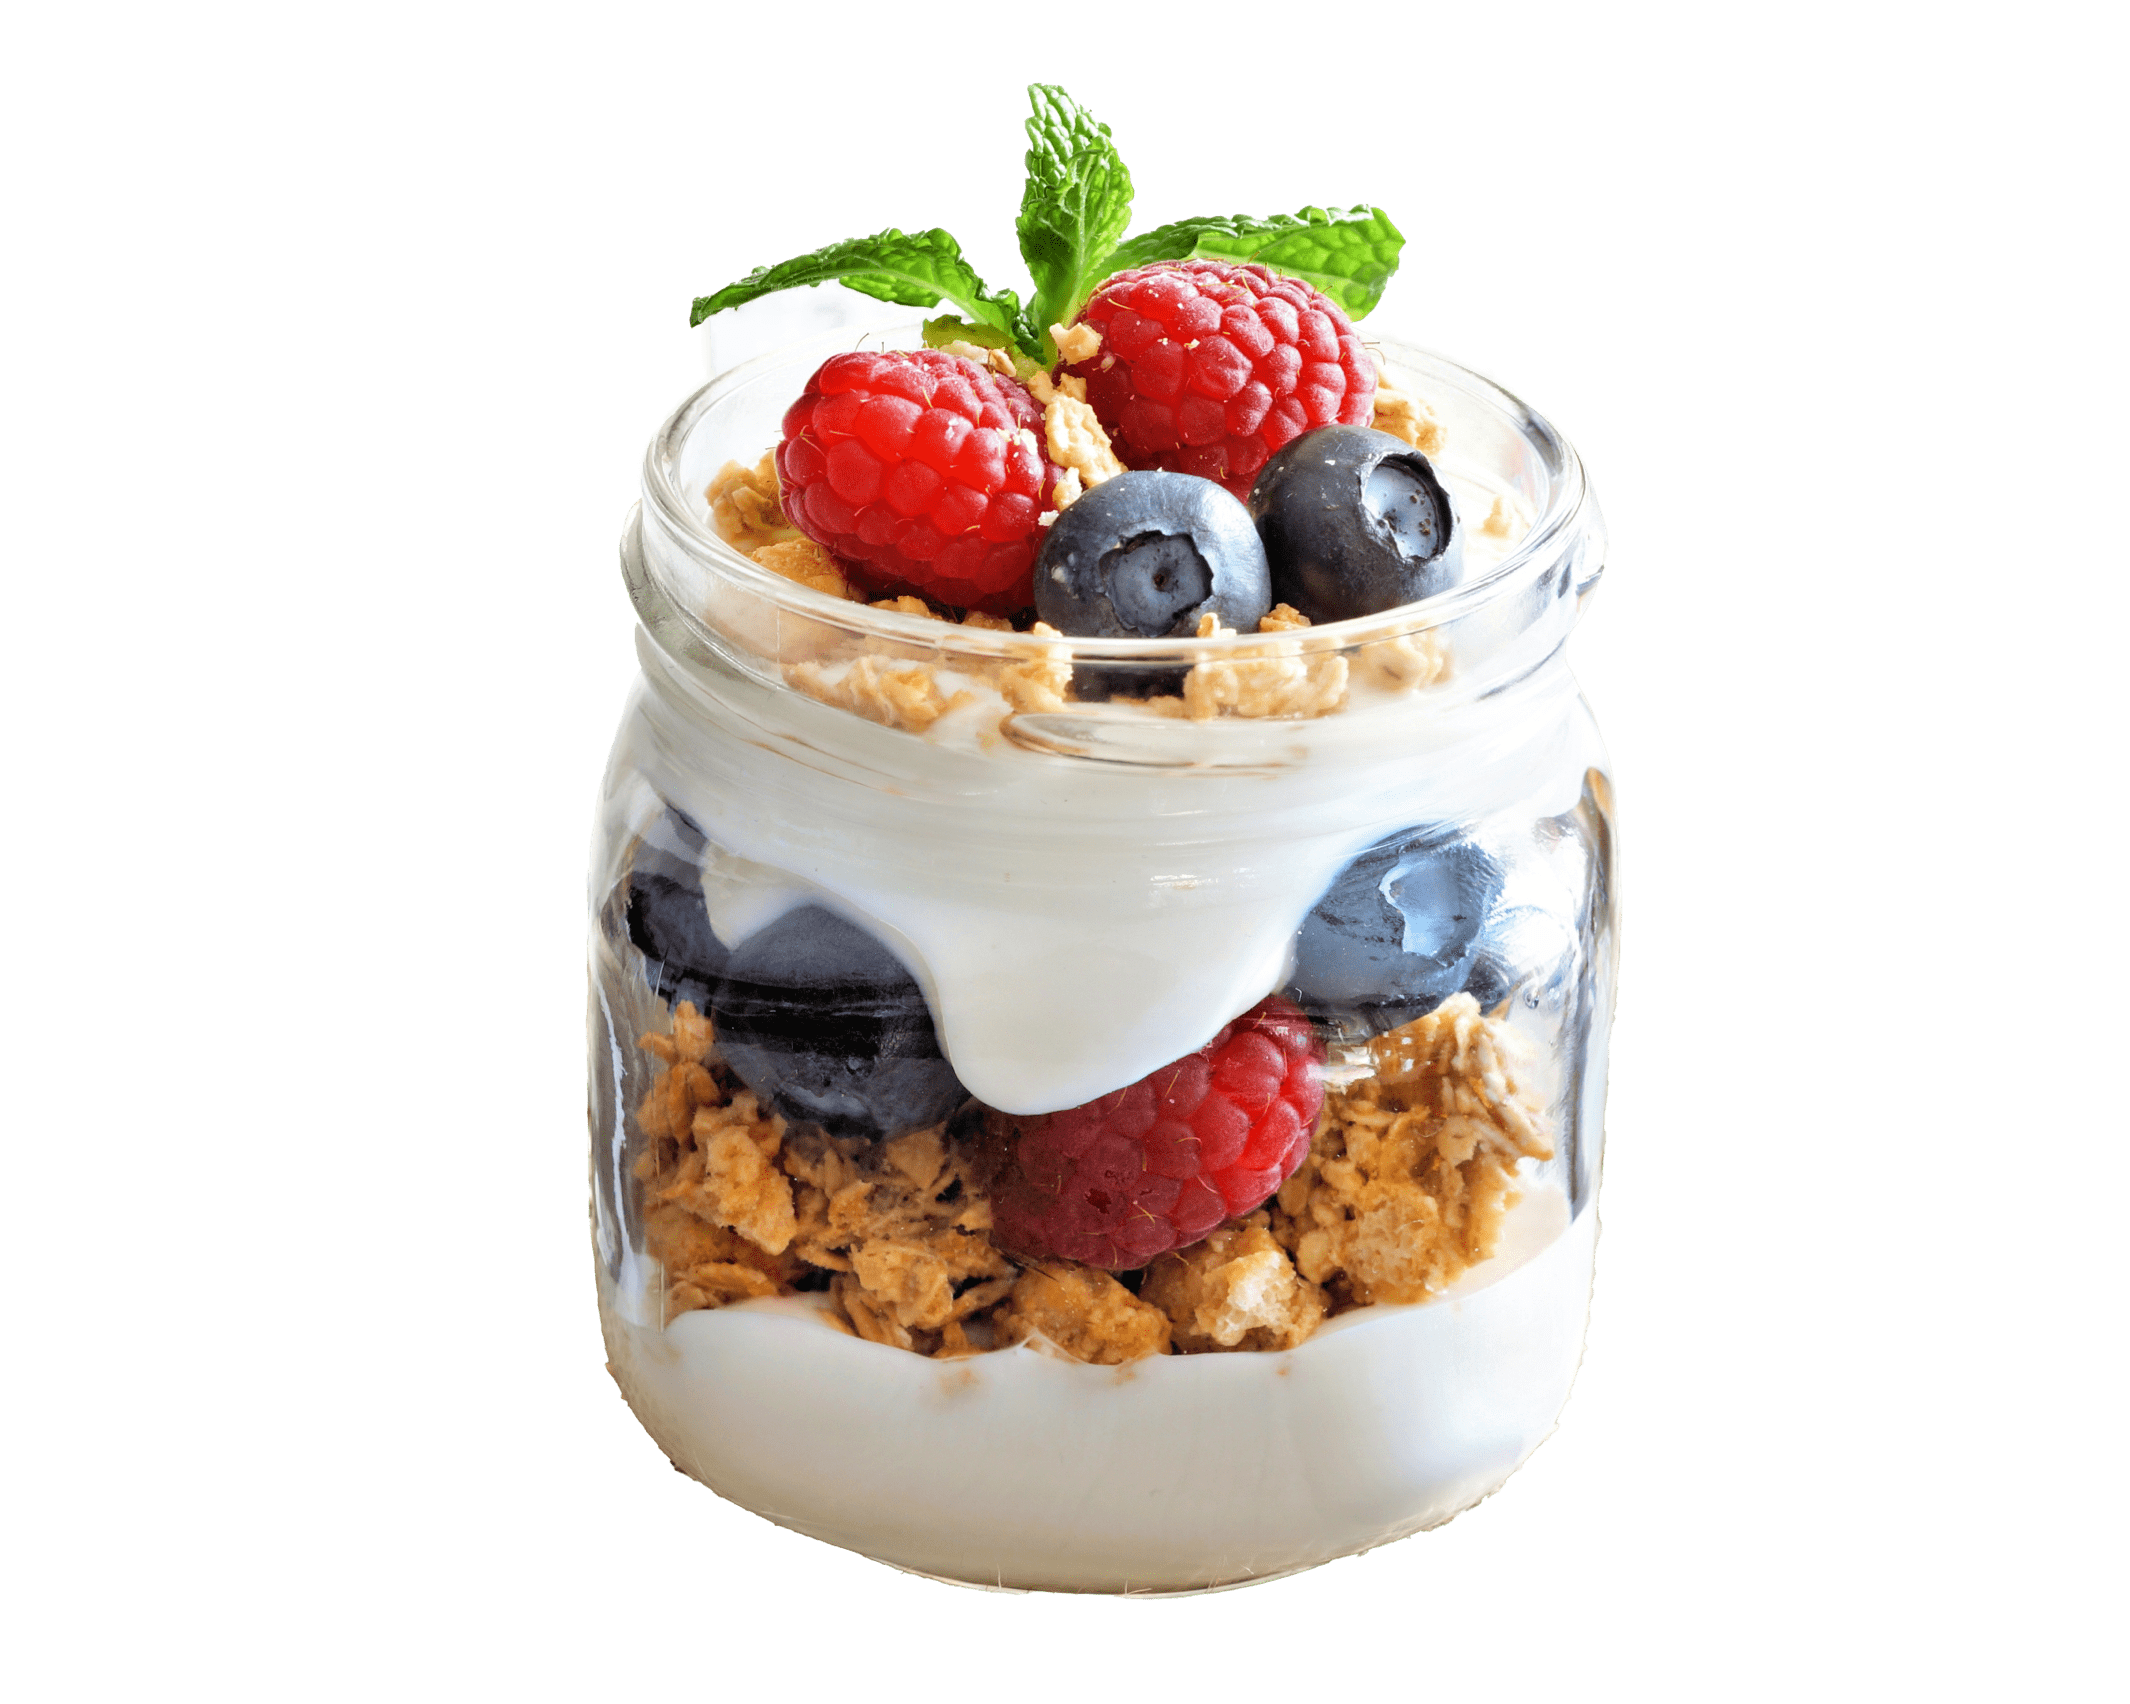 Regular yogurt parfait with berries and granola